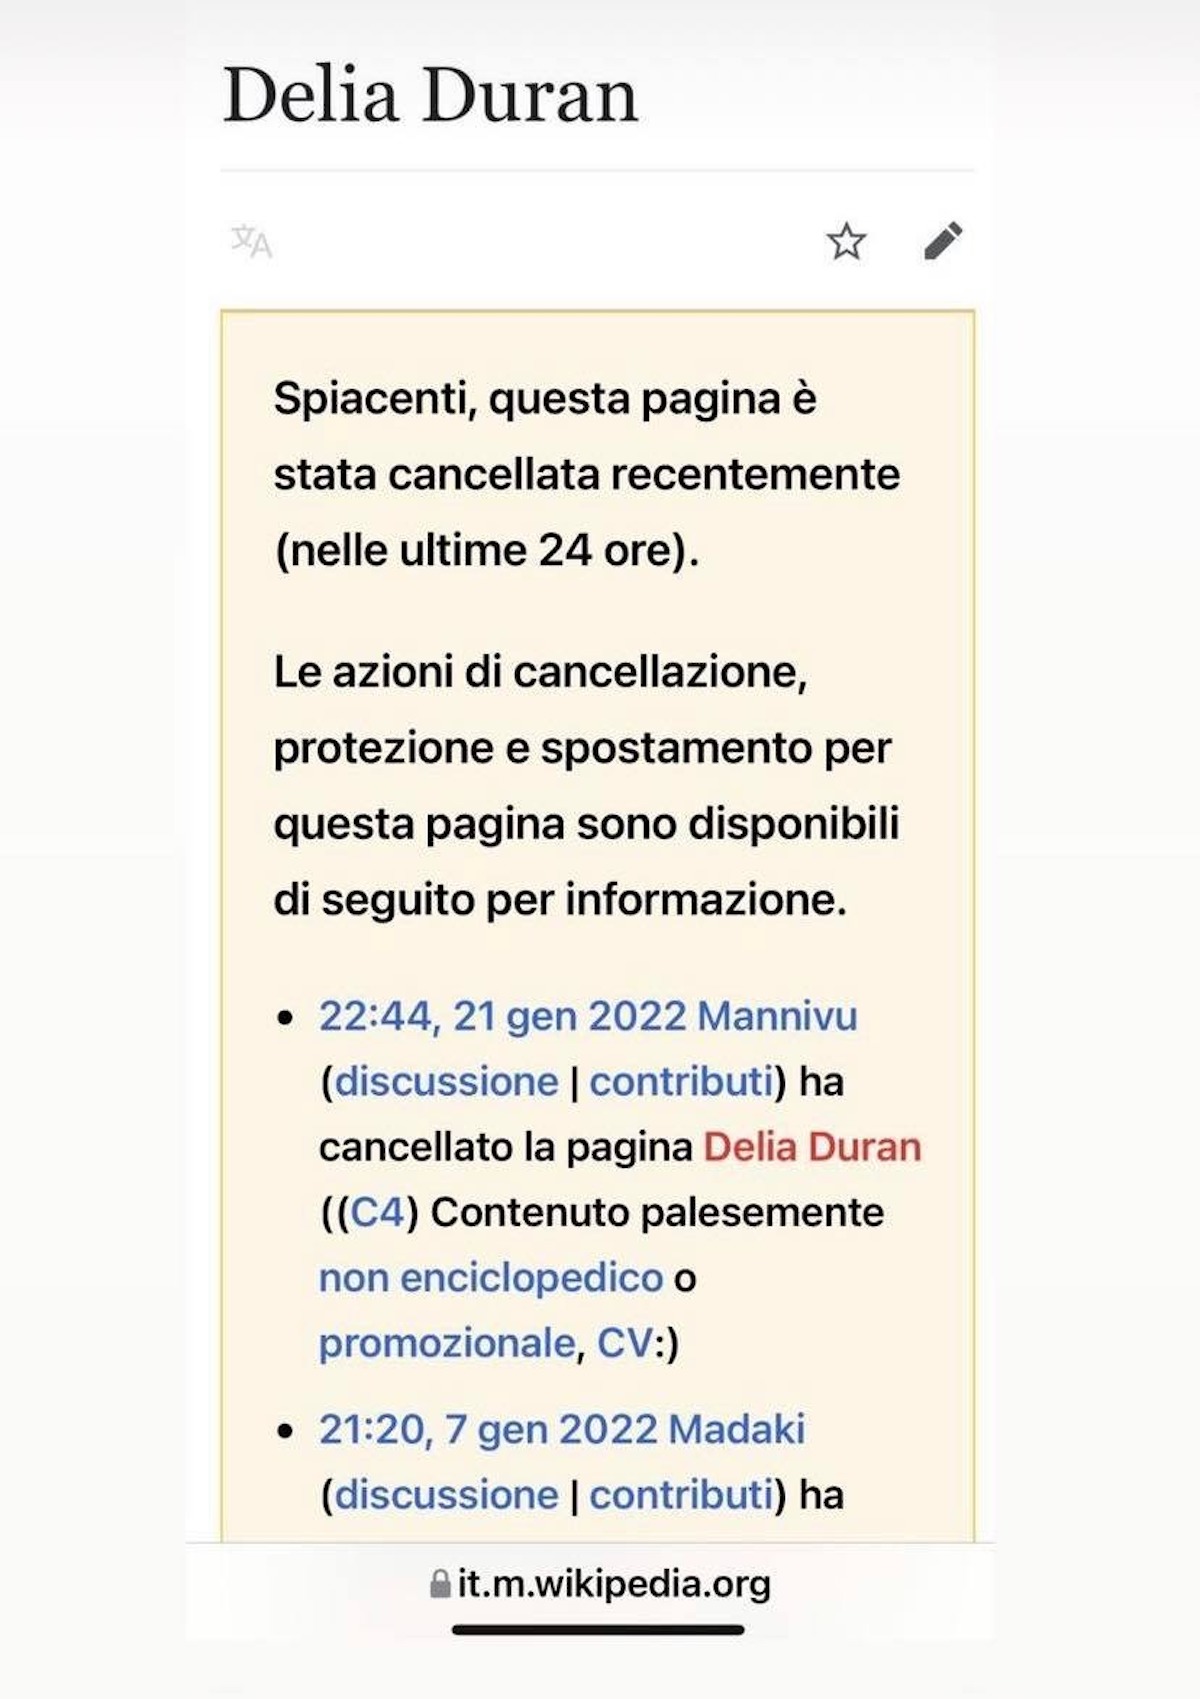 delia duran gf vip 6 wikipedia cancellata